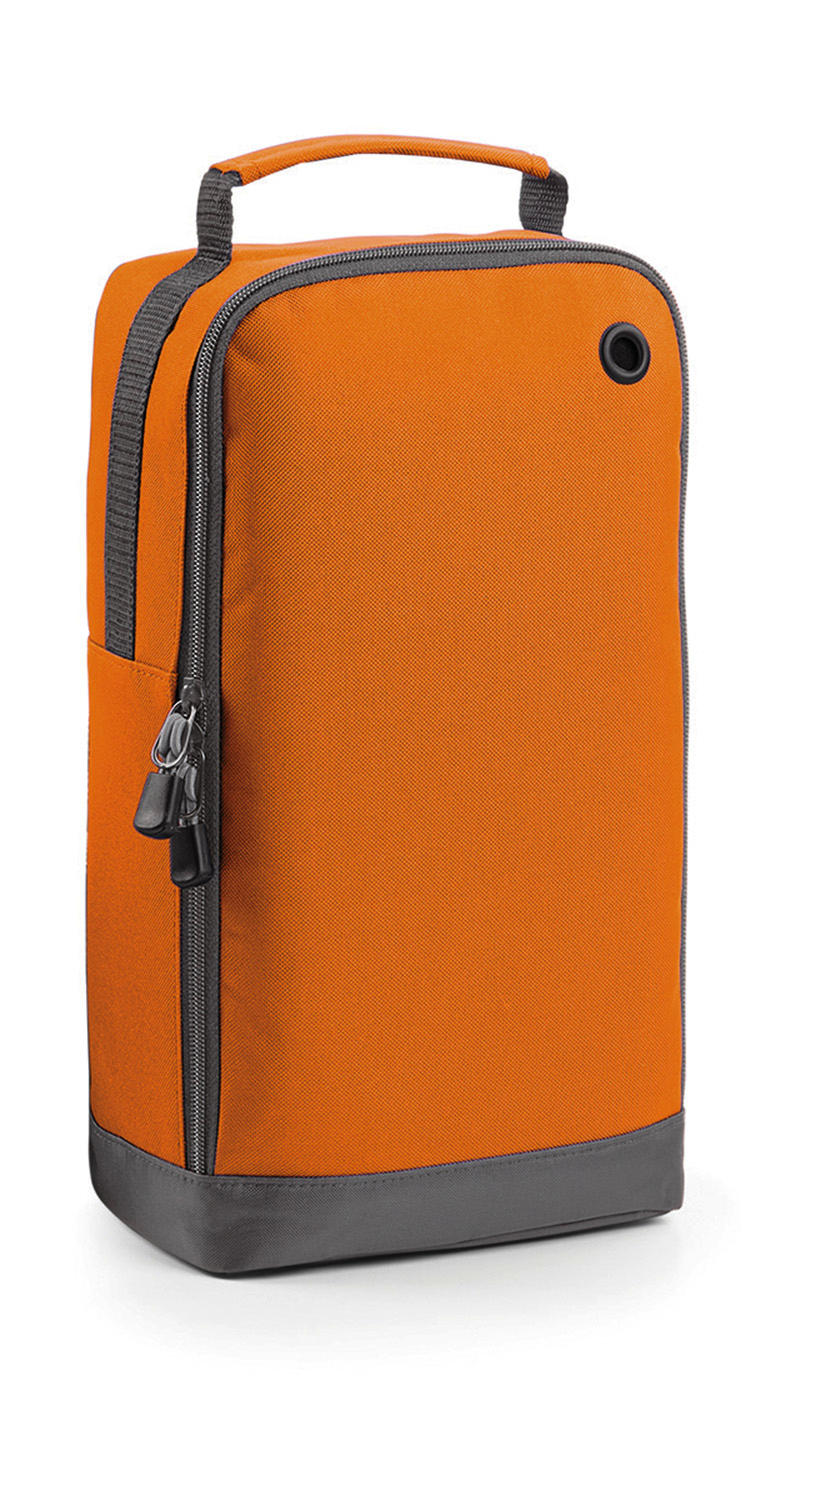  Sports Shoe/Accessory Bag in Farbe Orange